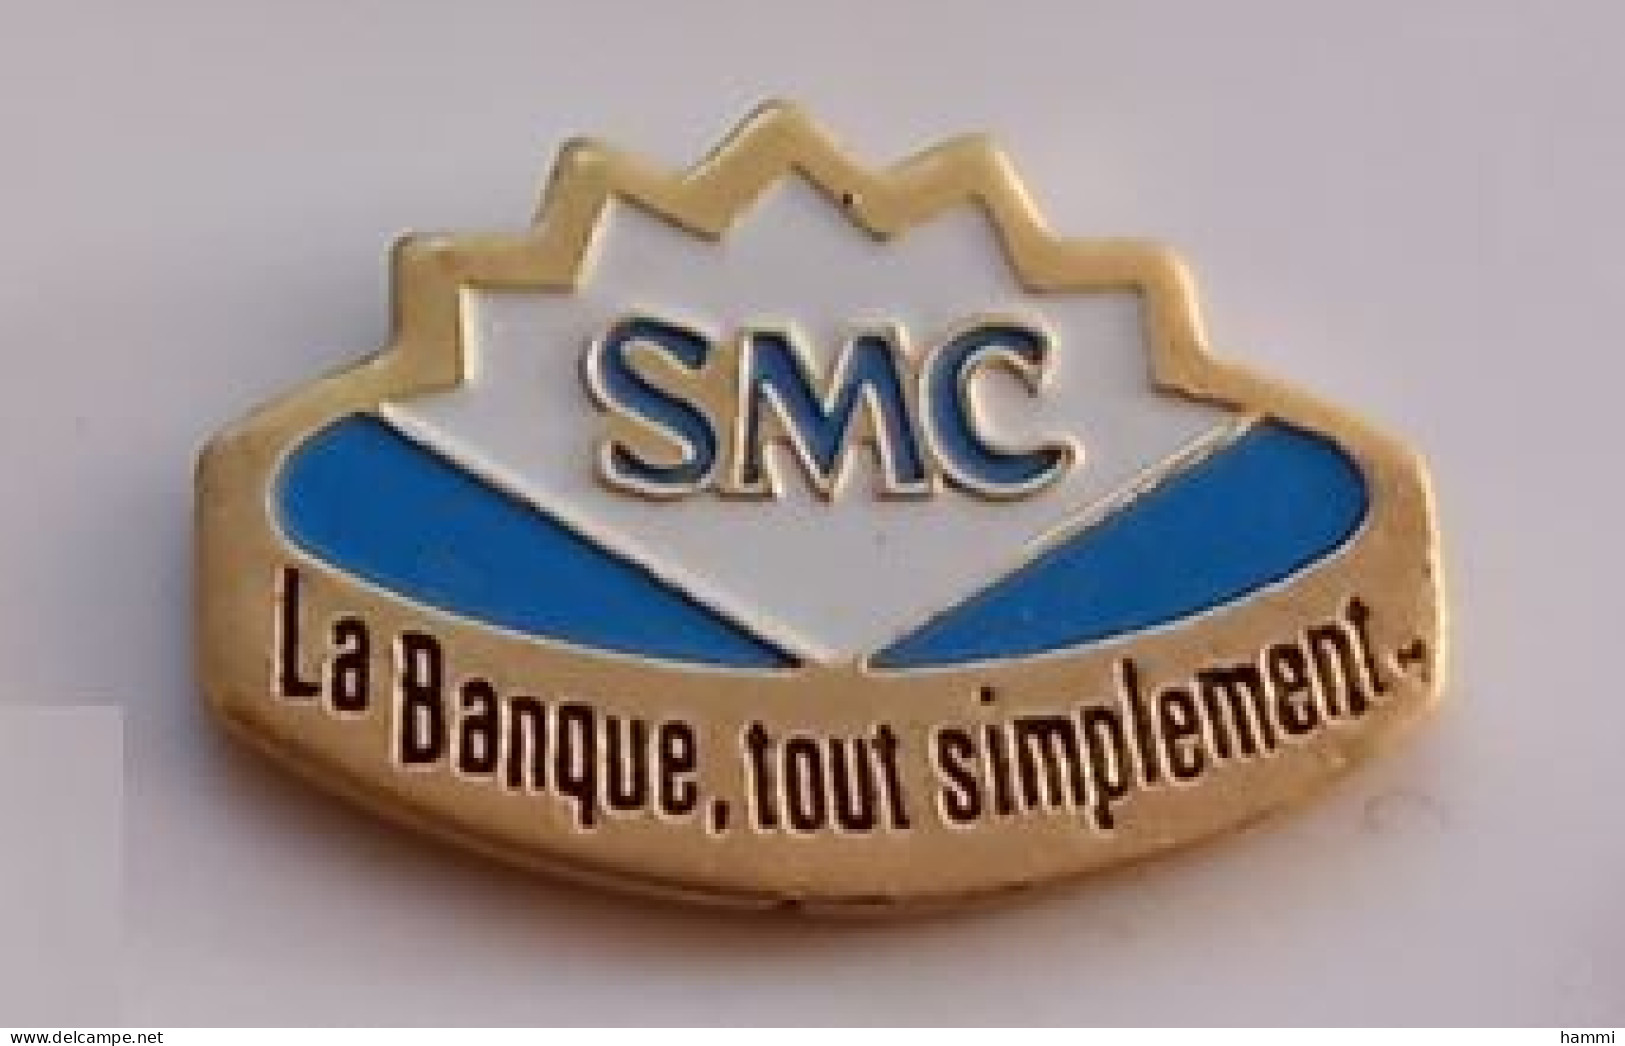 V167 Pin's Bank SMC La Banque Tout Simplement Société Marseillaise De Crédit Marseille Achat Immédiat - Banken